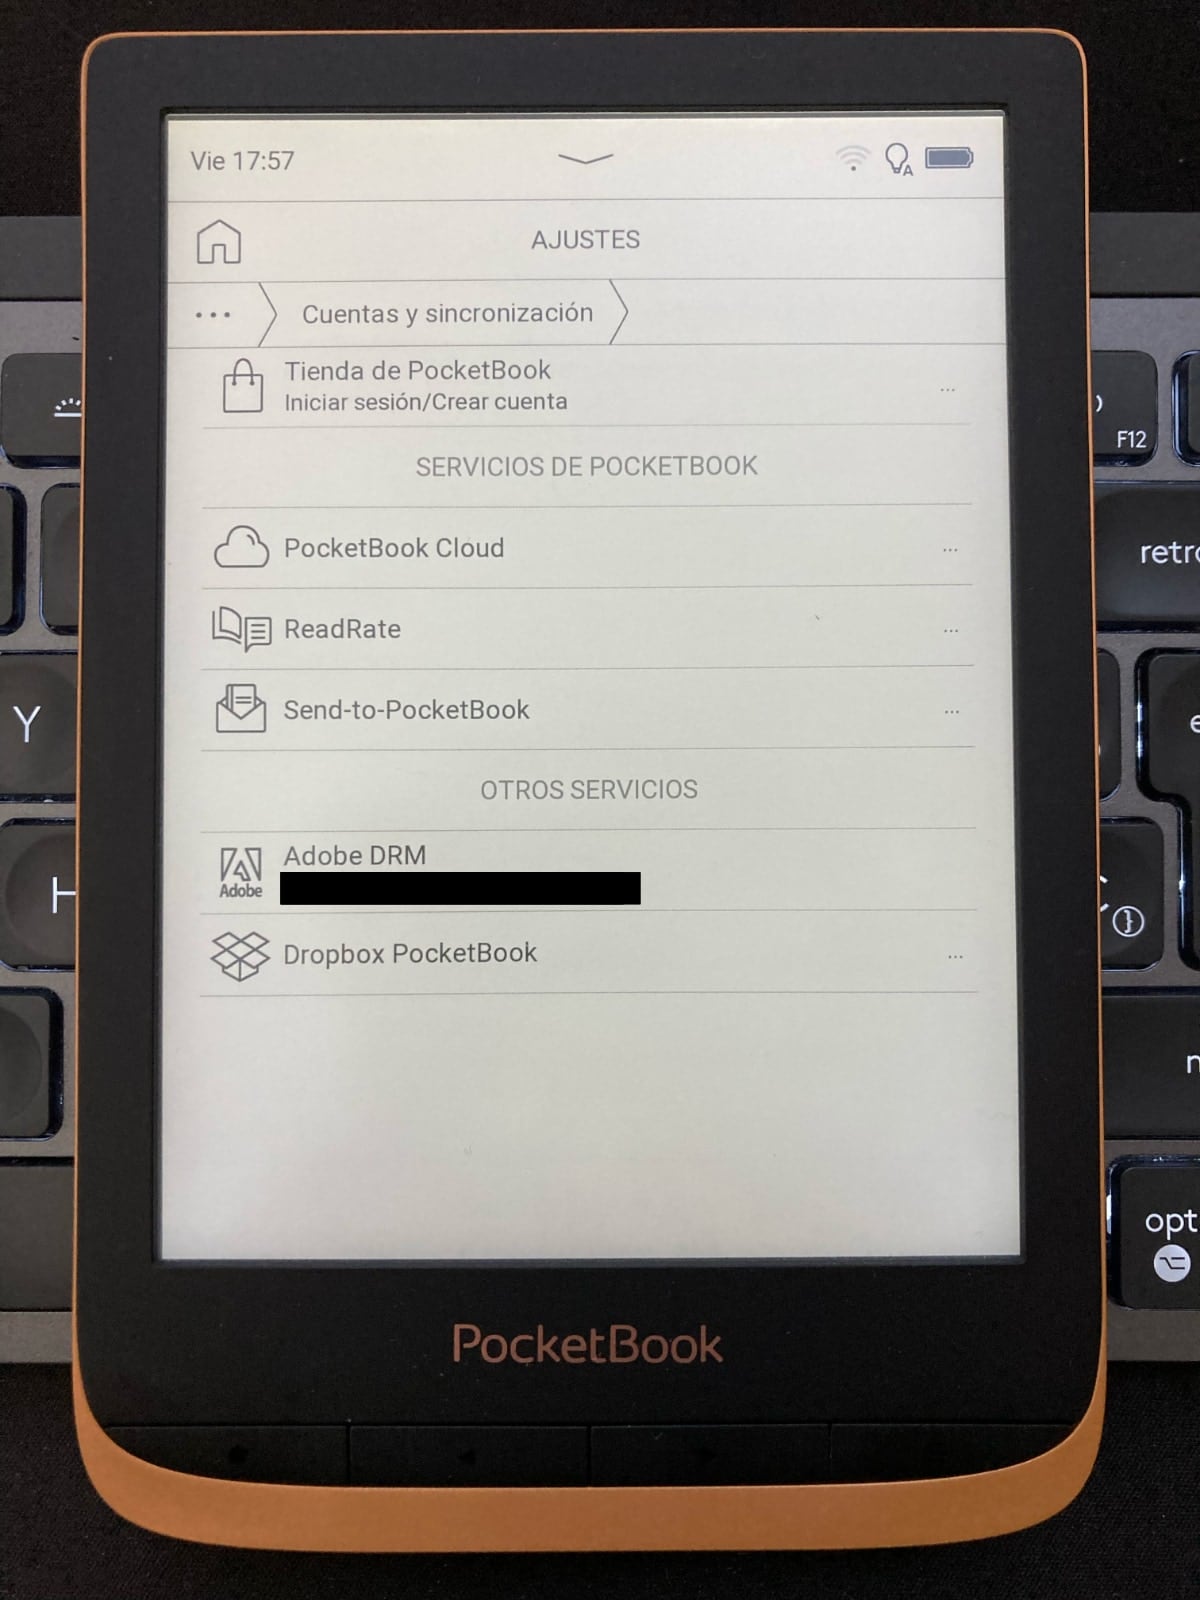 Activar la cuenta de usuario de Adobe en nuestro PocketBook: vamos a Cuentas y sincronización